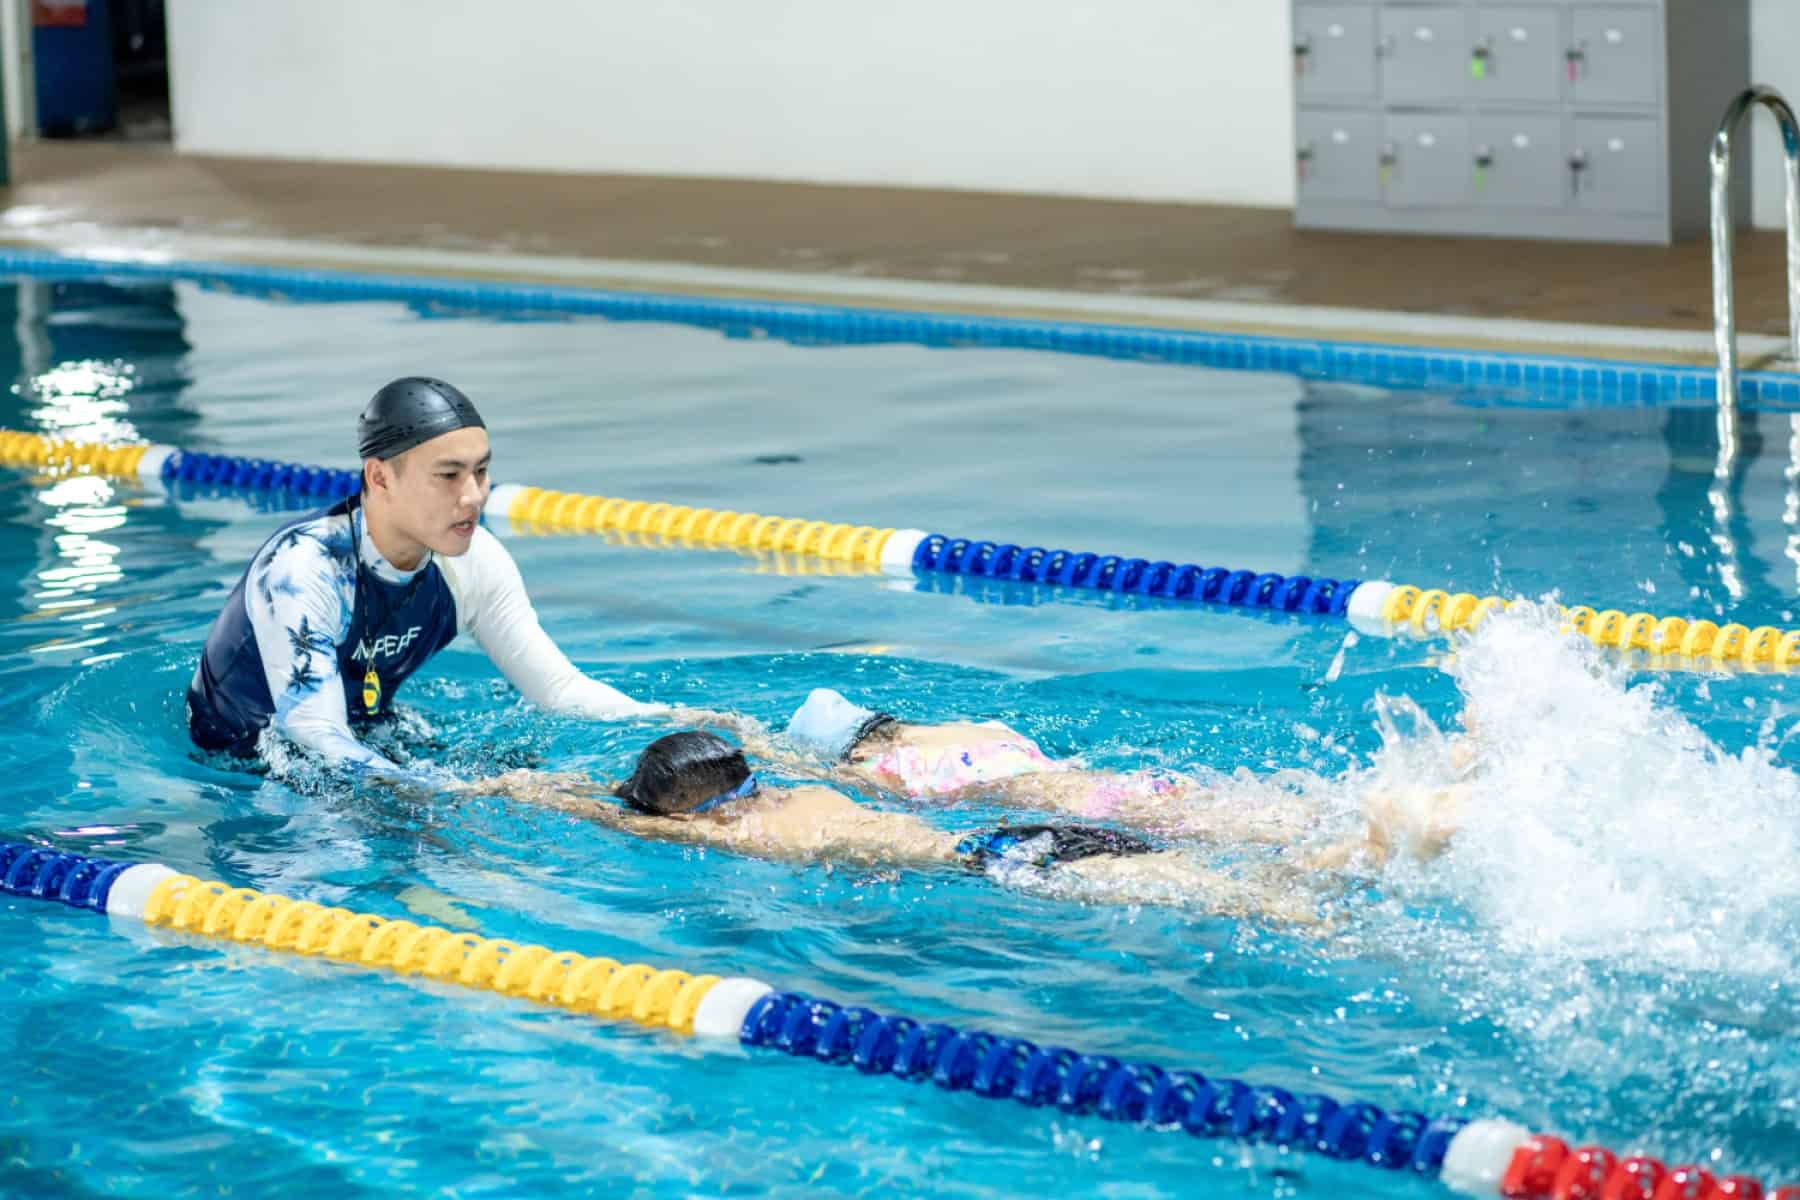 Bể bơi bốn mùa tại Iris School được thiết kế theo tiêu chuẩn quốc tế, đem đến cho học sinh những trải nghiệm tốt nhất